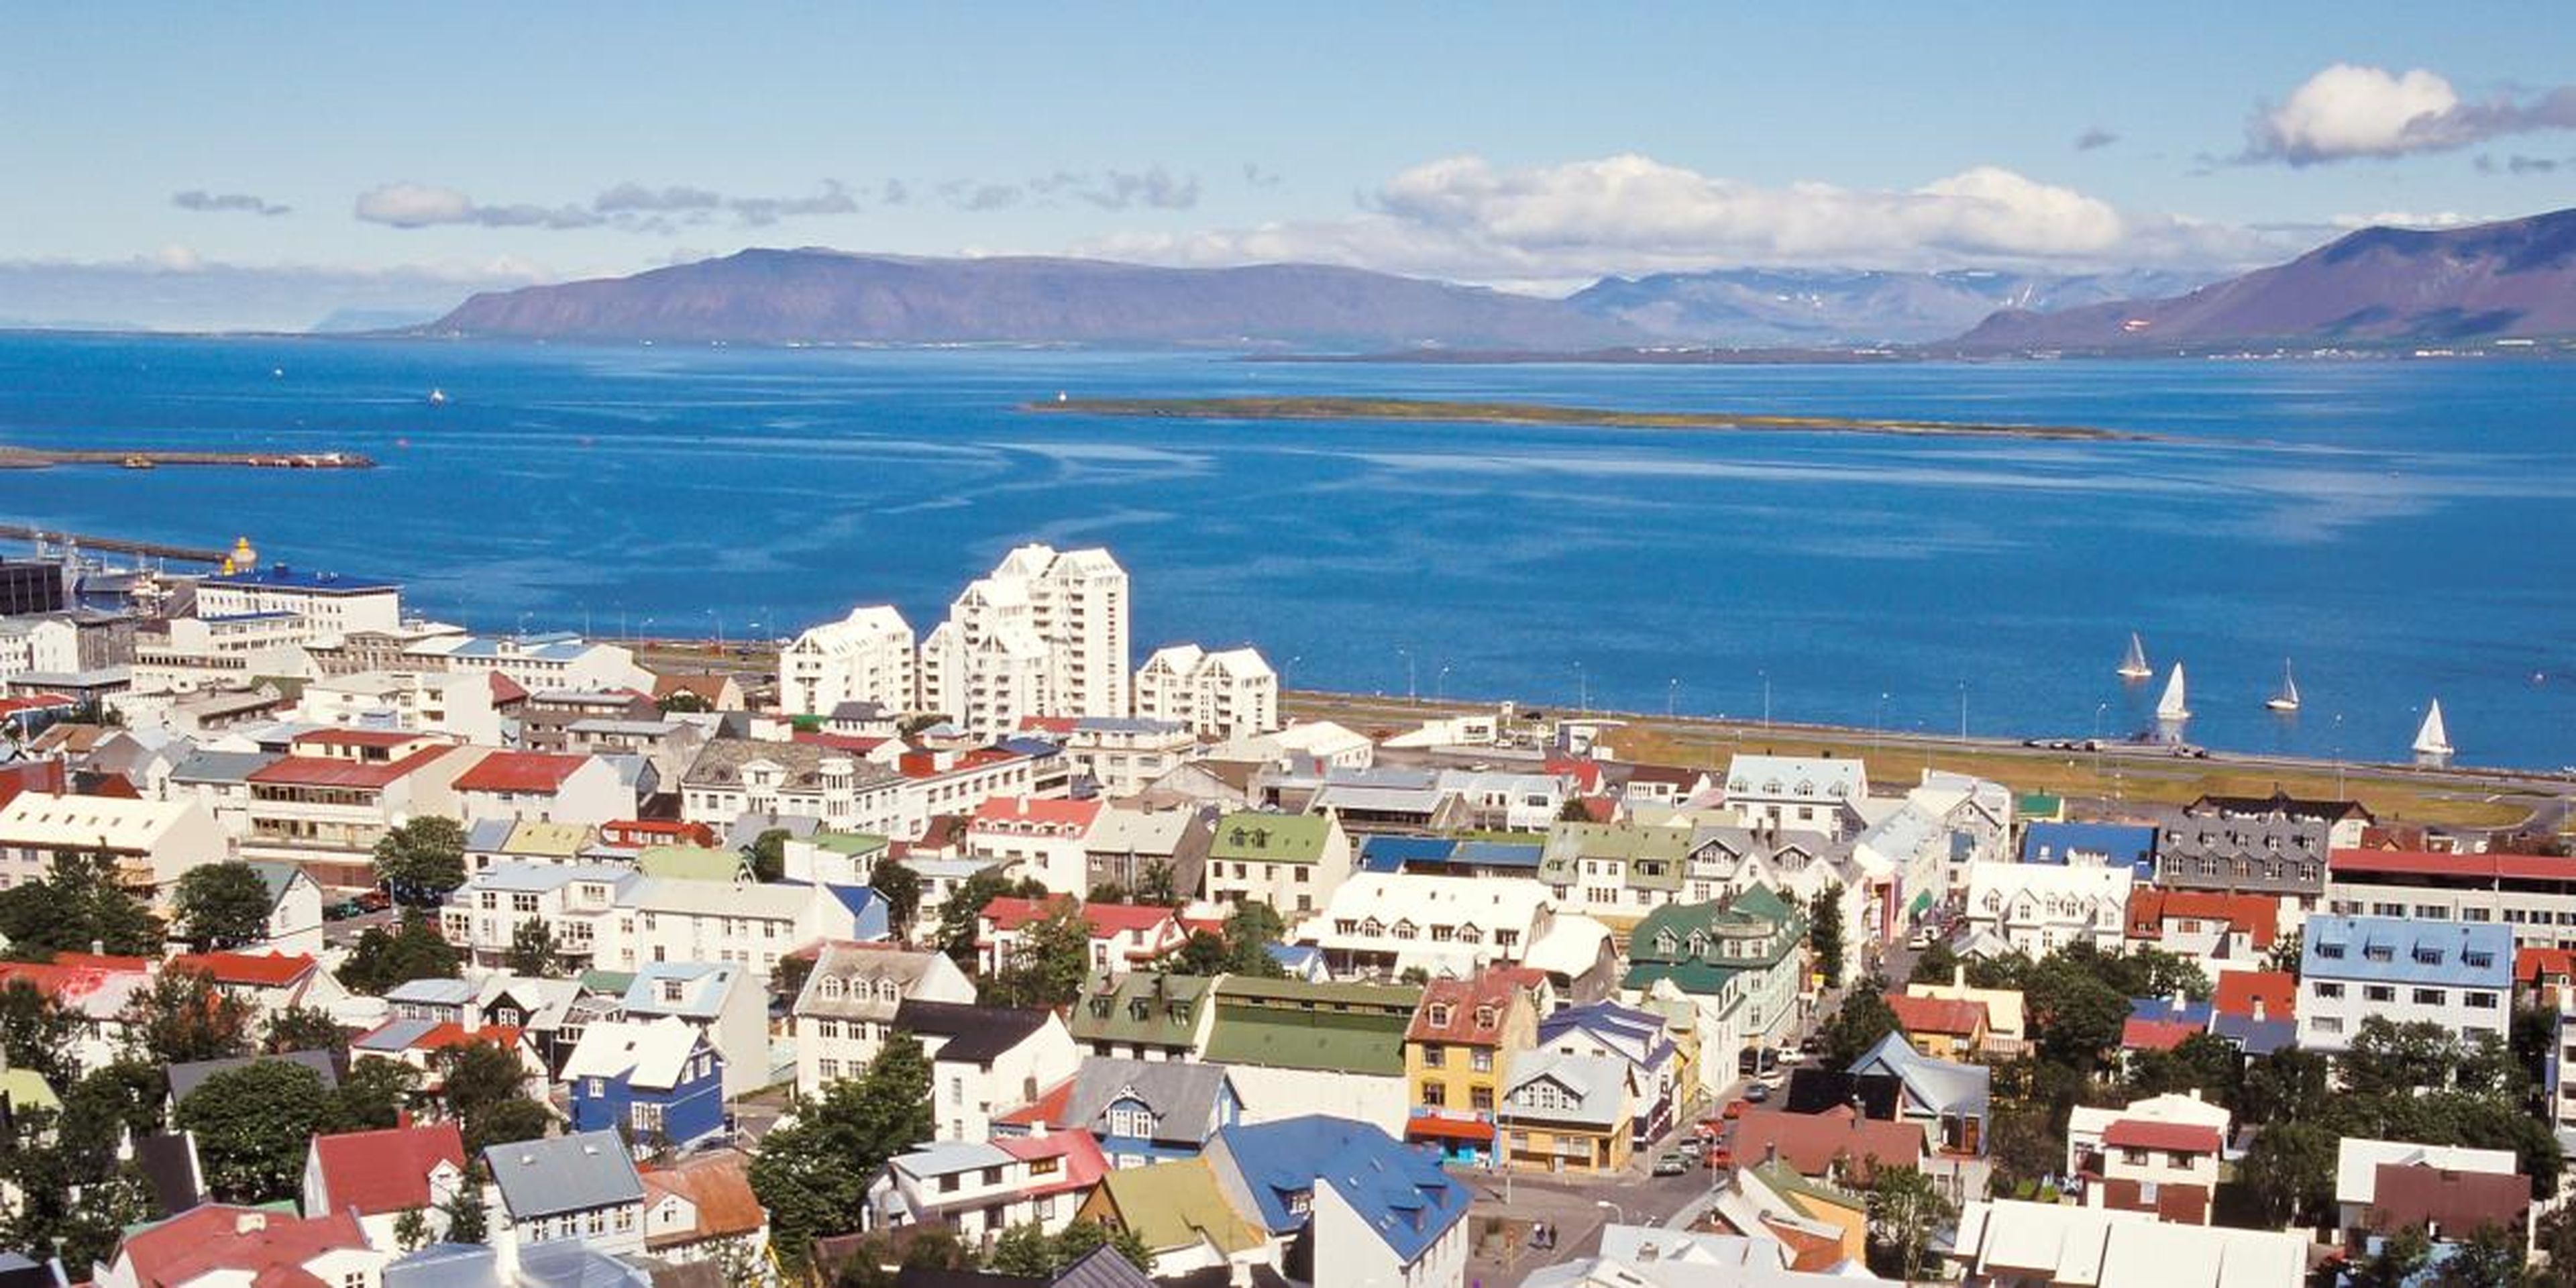 9. Islandia: 59.3%